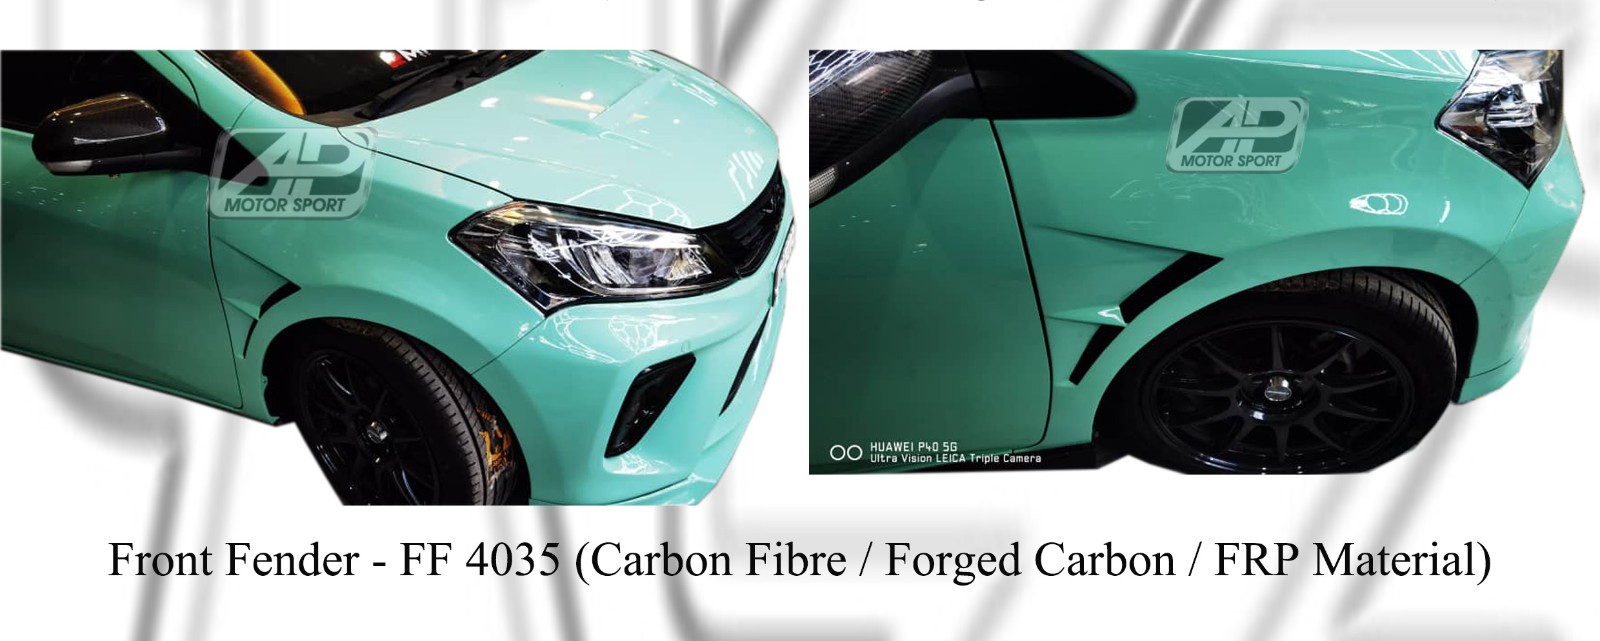 Perodua Myvi 2018 Front Fender (Carbon Fibre / Forged Carbon